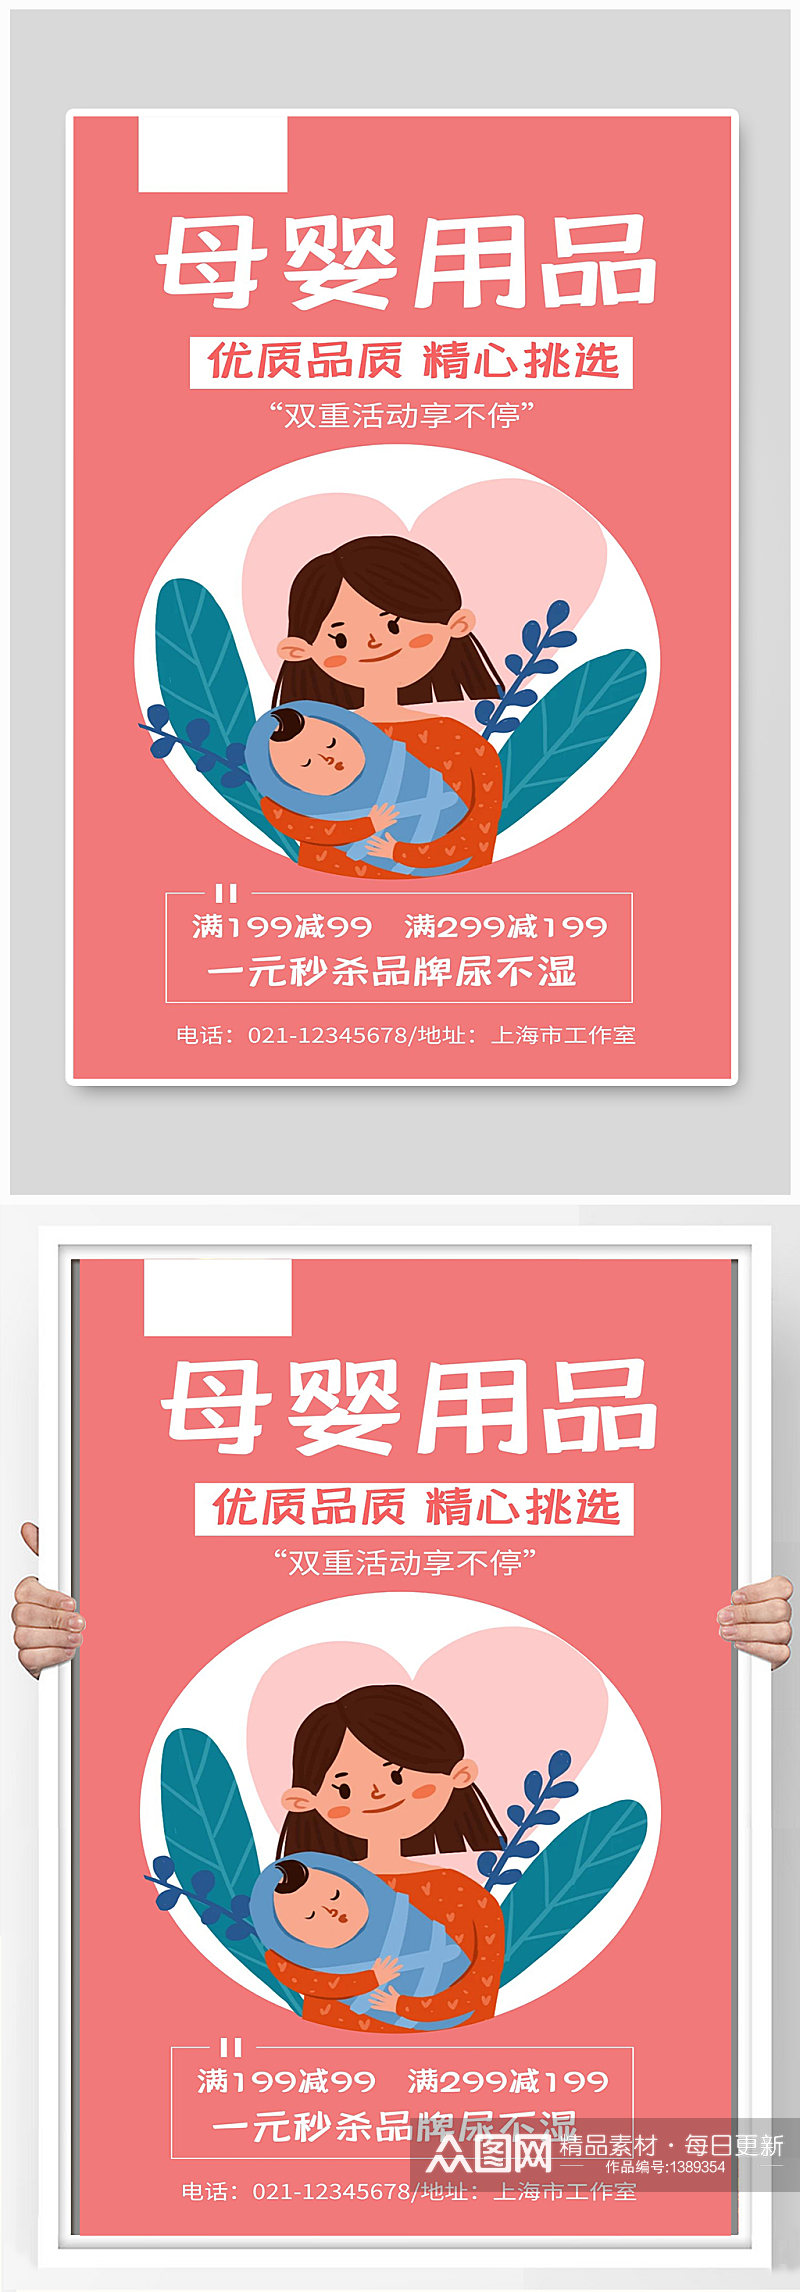 母婴用品宣传海报设计素材